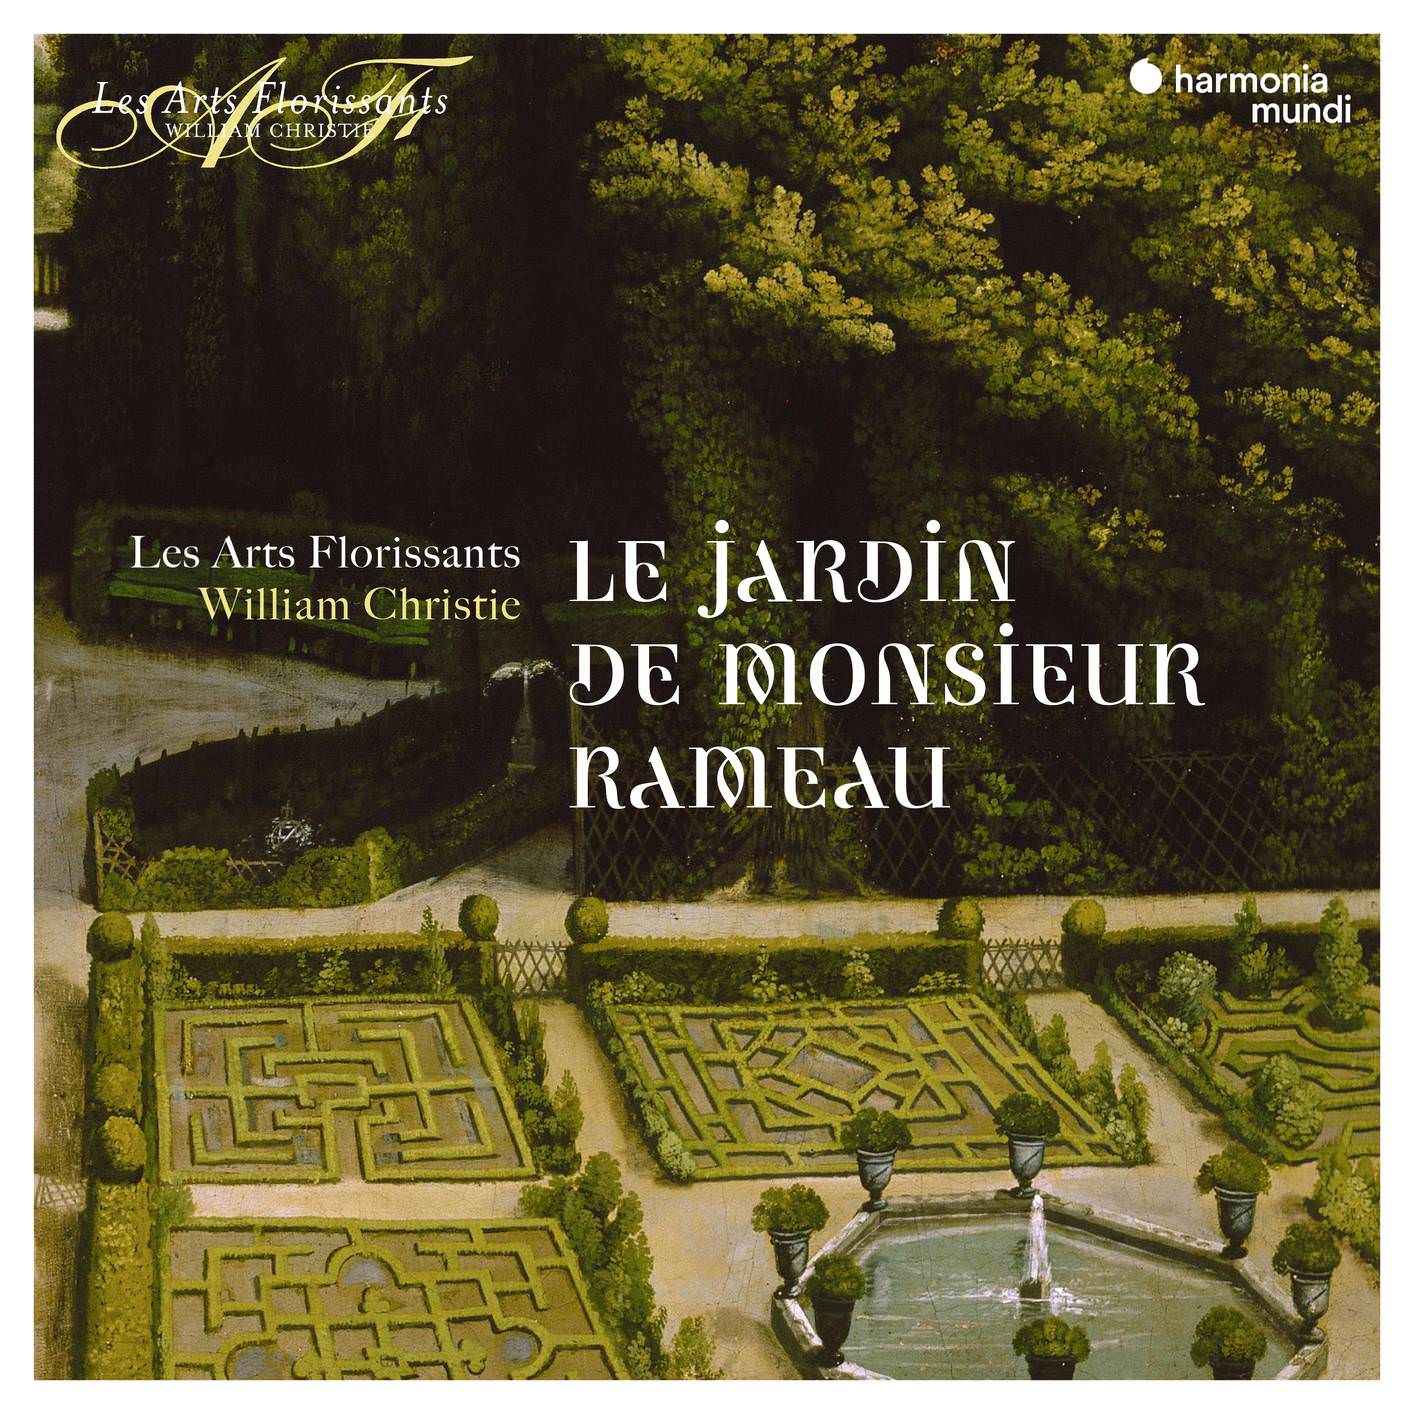 Les Arts Florissants & William Christie - Le Jardin de Monsieur Rameau (2018) [FLAC 24bit/96kHz]